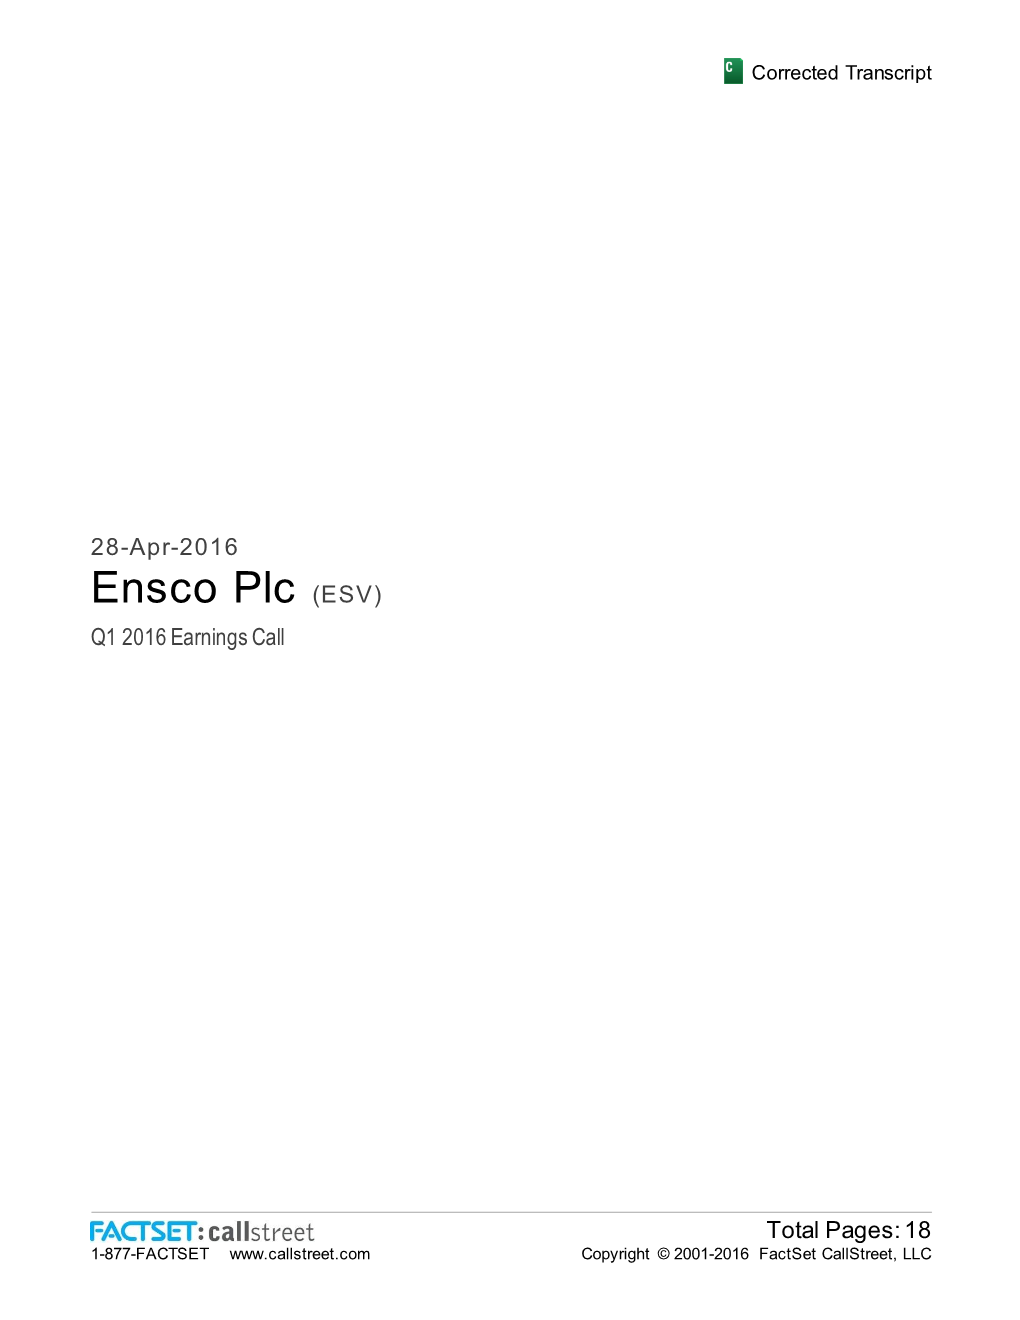 Ensco Plc (ESV) Q1 2016 Earnings Call